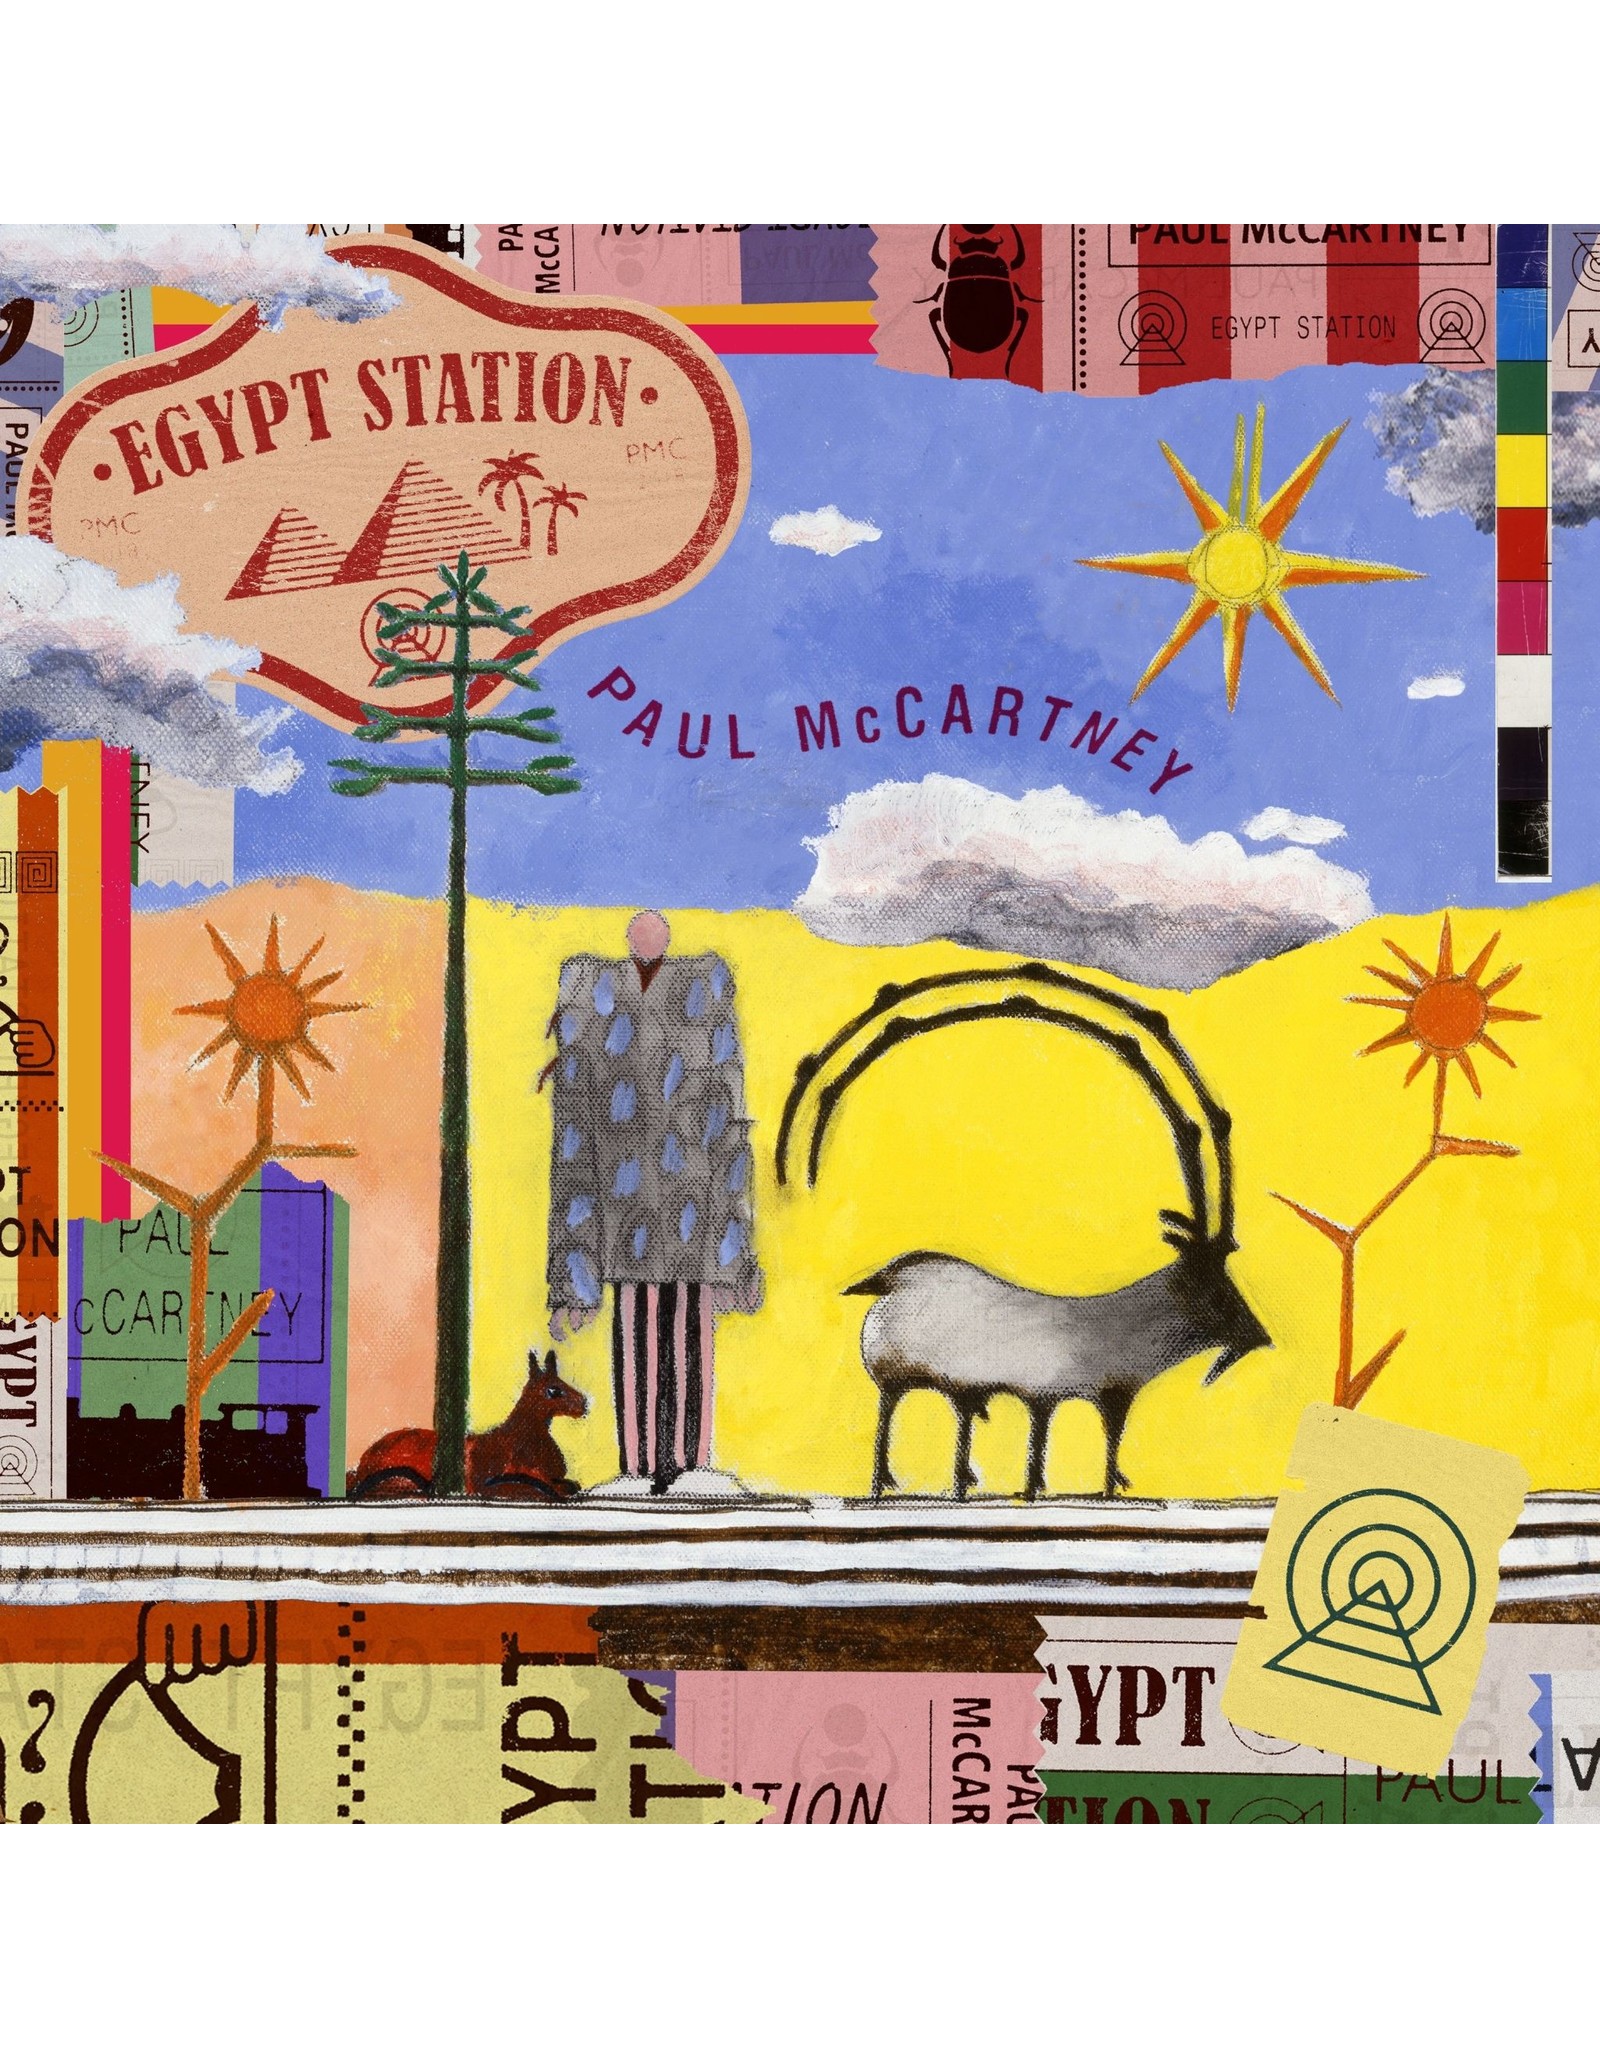 Paul McCartney - Egypt Station